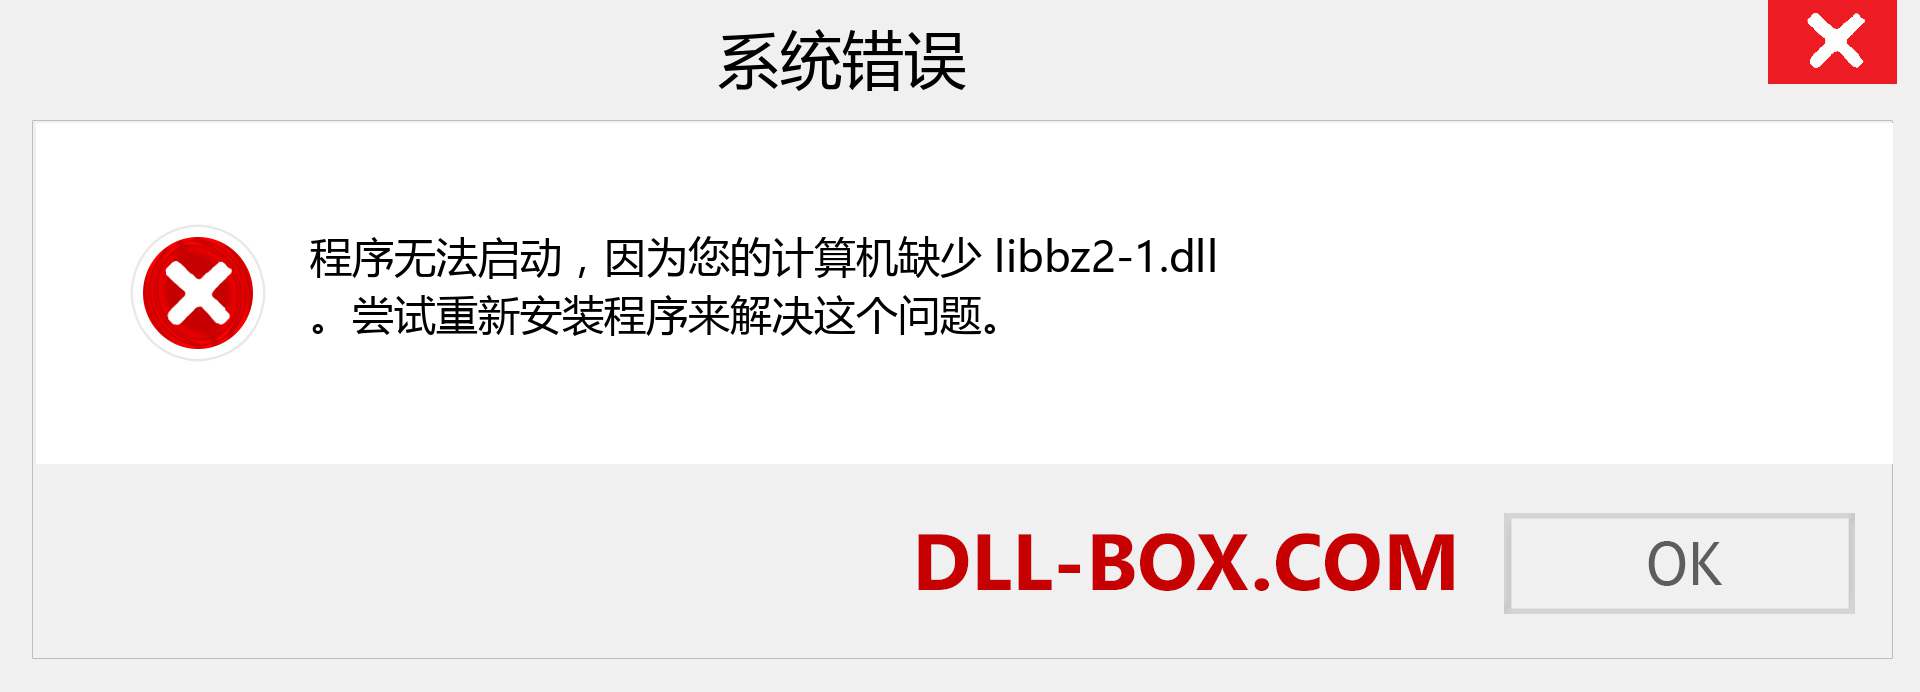 libbz2-1.dll 文件丢失？。 适用于 Windows 7、8、10 的下载 - 修复 Windows、照片、图像上的 libbz2-1 dll 丢失错误